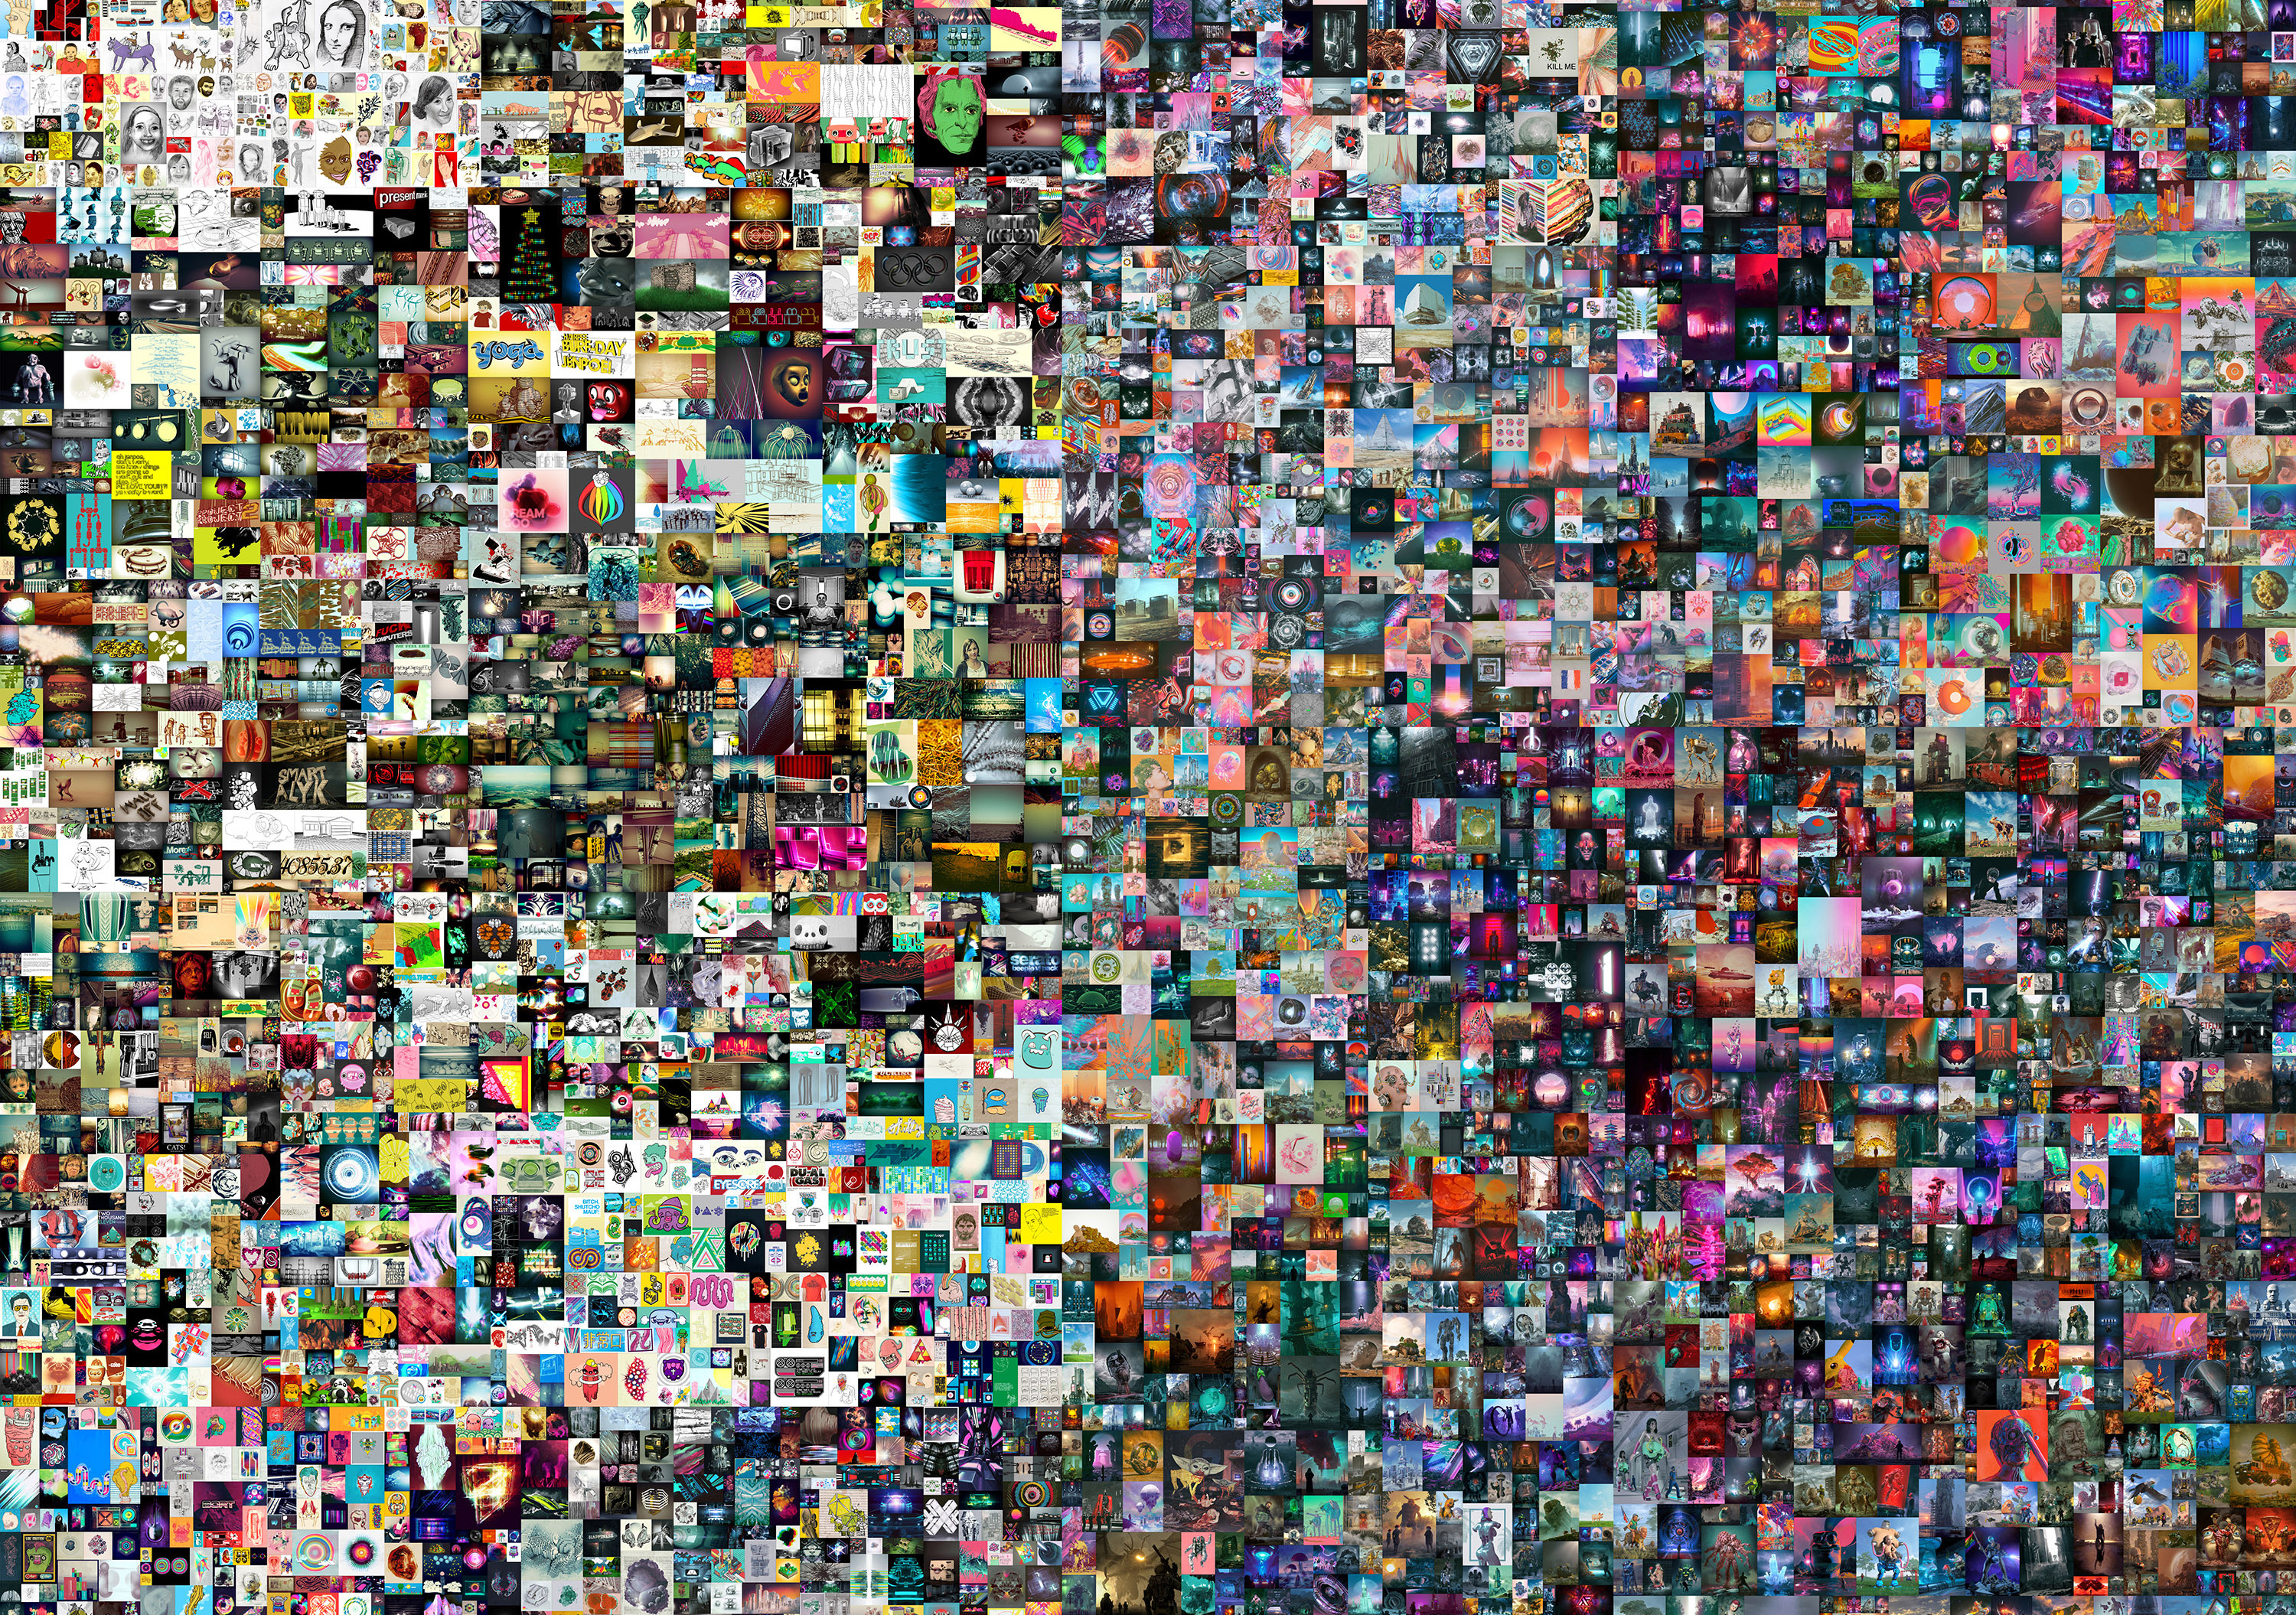 Everydays : the First 5.000 Days, le titre d'un collage de 5.000 images numériques s'est vendu aux enchères chez Christie's pour la somme astronomique de 69,3 millions de dollars. © Mike Winkelmann, alias Beeple